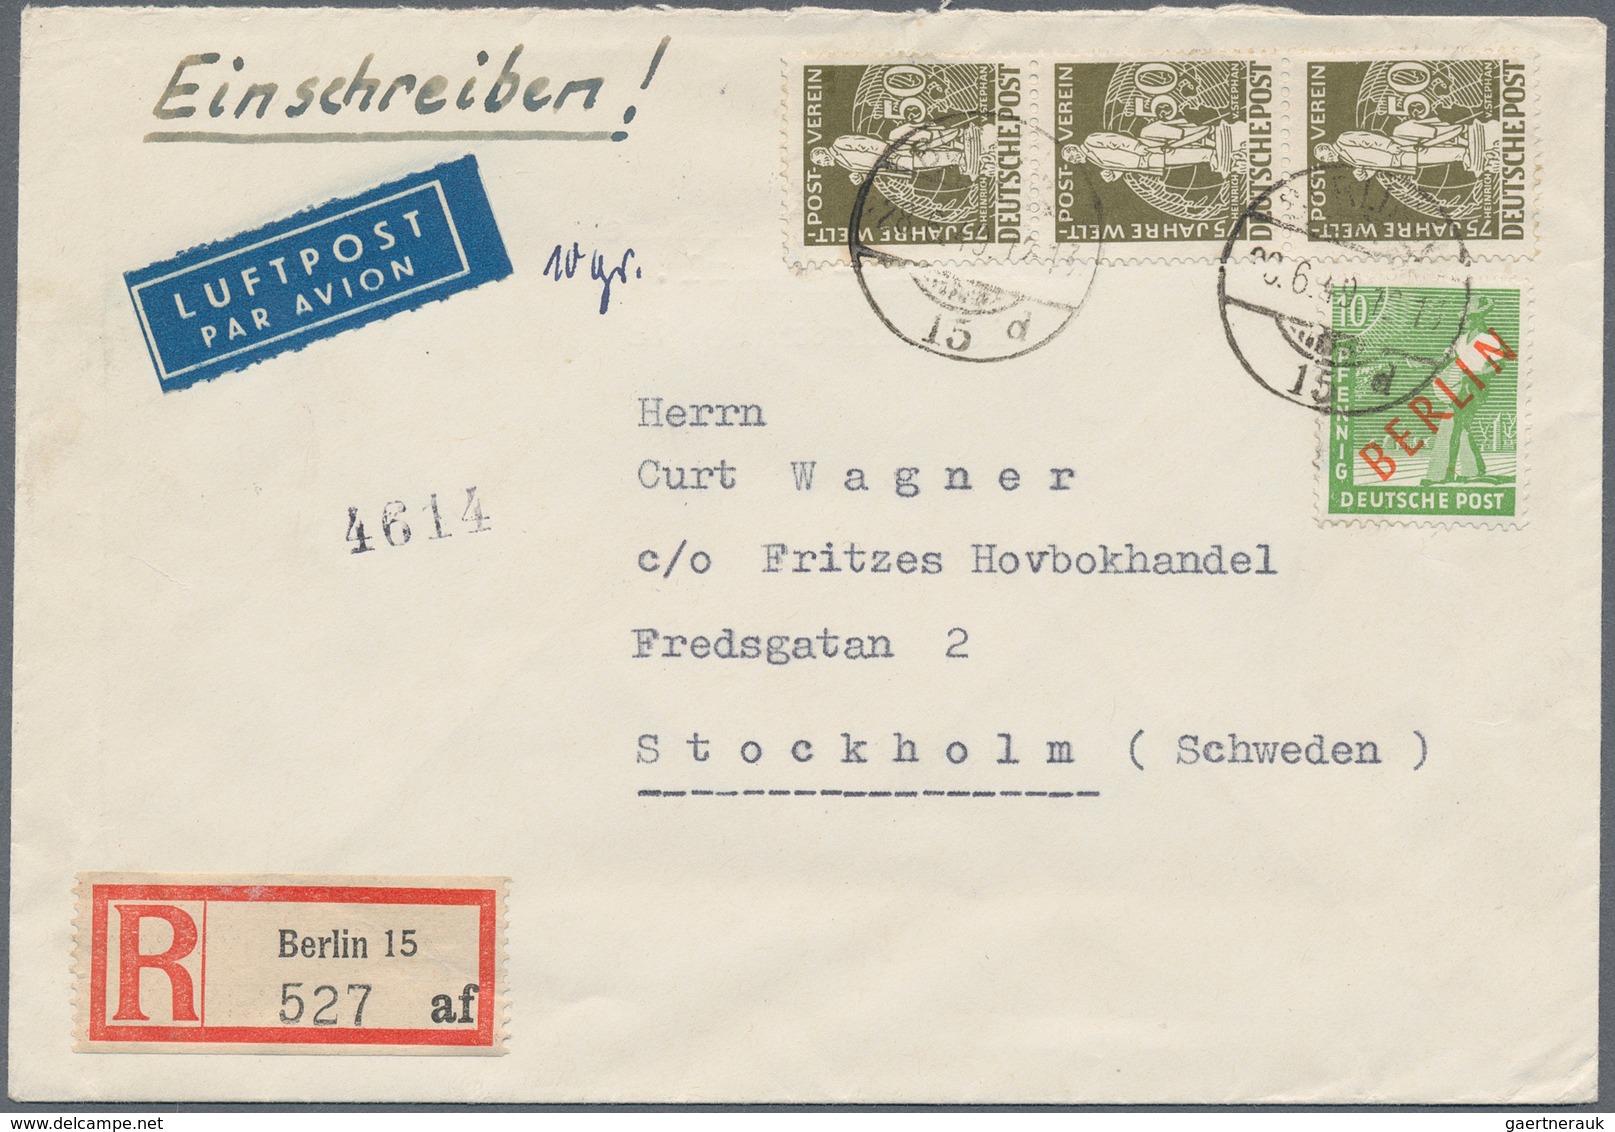 Berlin: 1949: IAS-Luftpostbrief Europa Mit Einschreiben, Tarif I ( 50 + 1 IAS 50 Pf. Und 60 R ) DM 1 - Covers & Documents